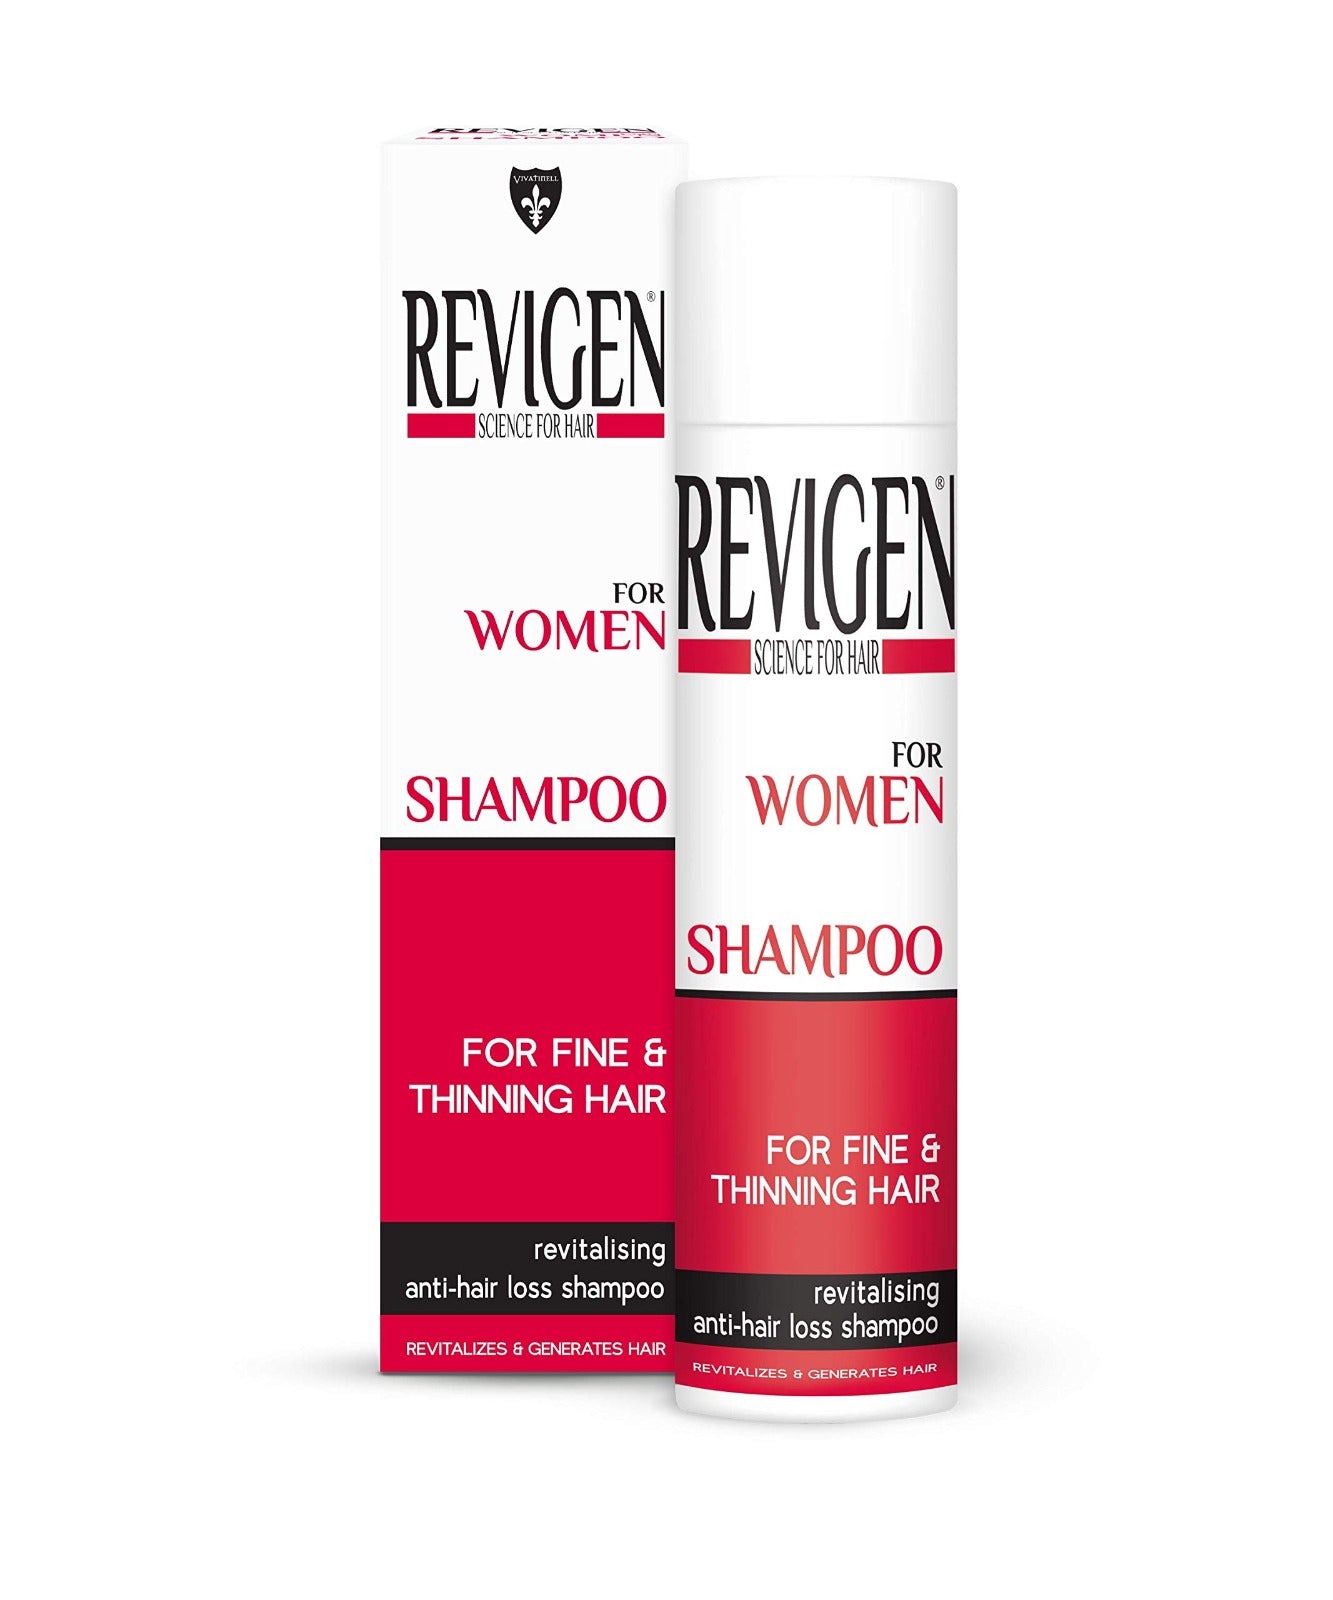 Revigen Shampoo